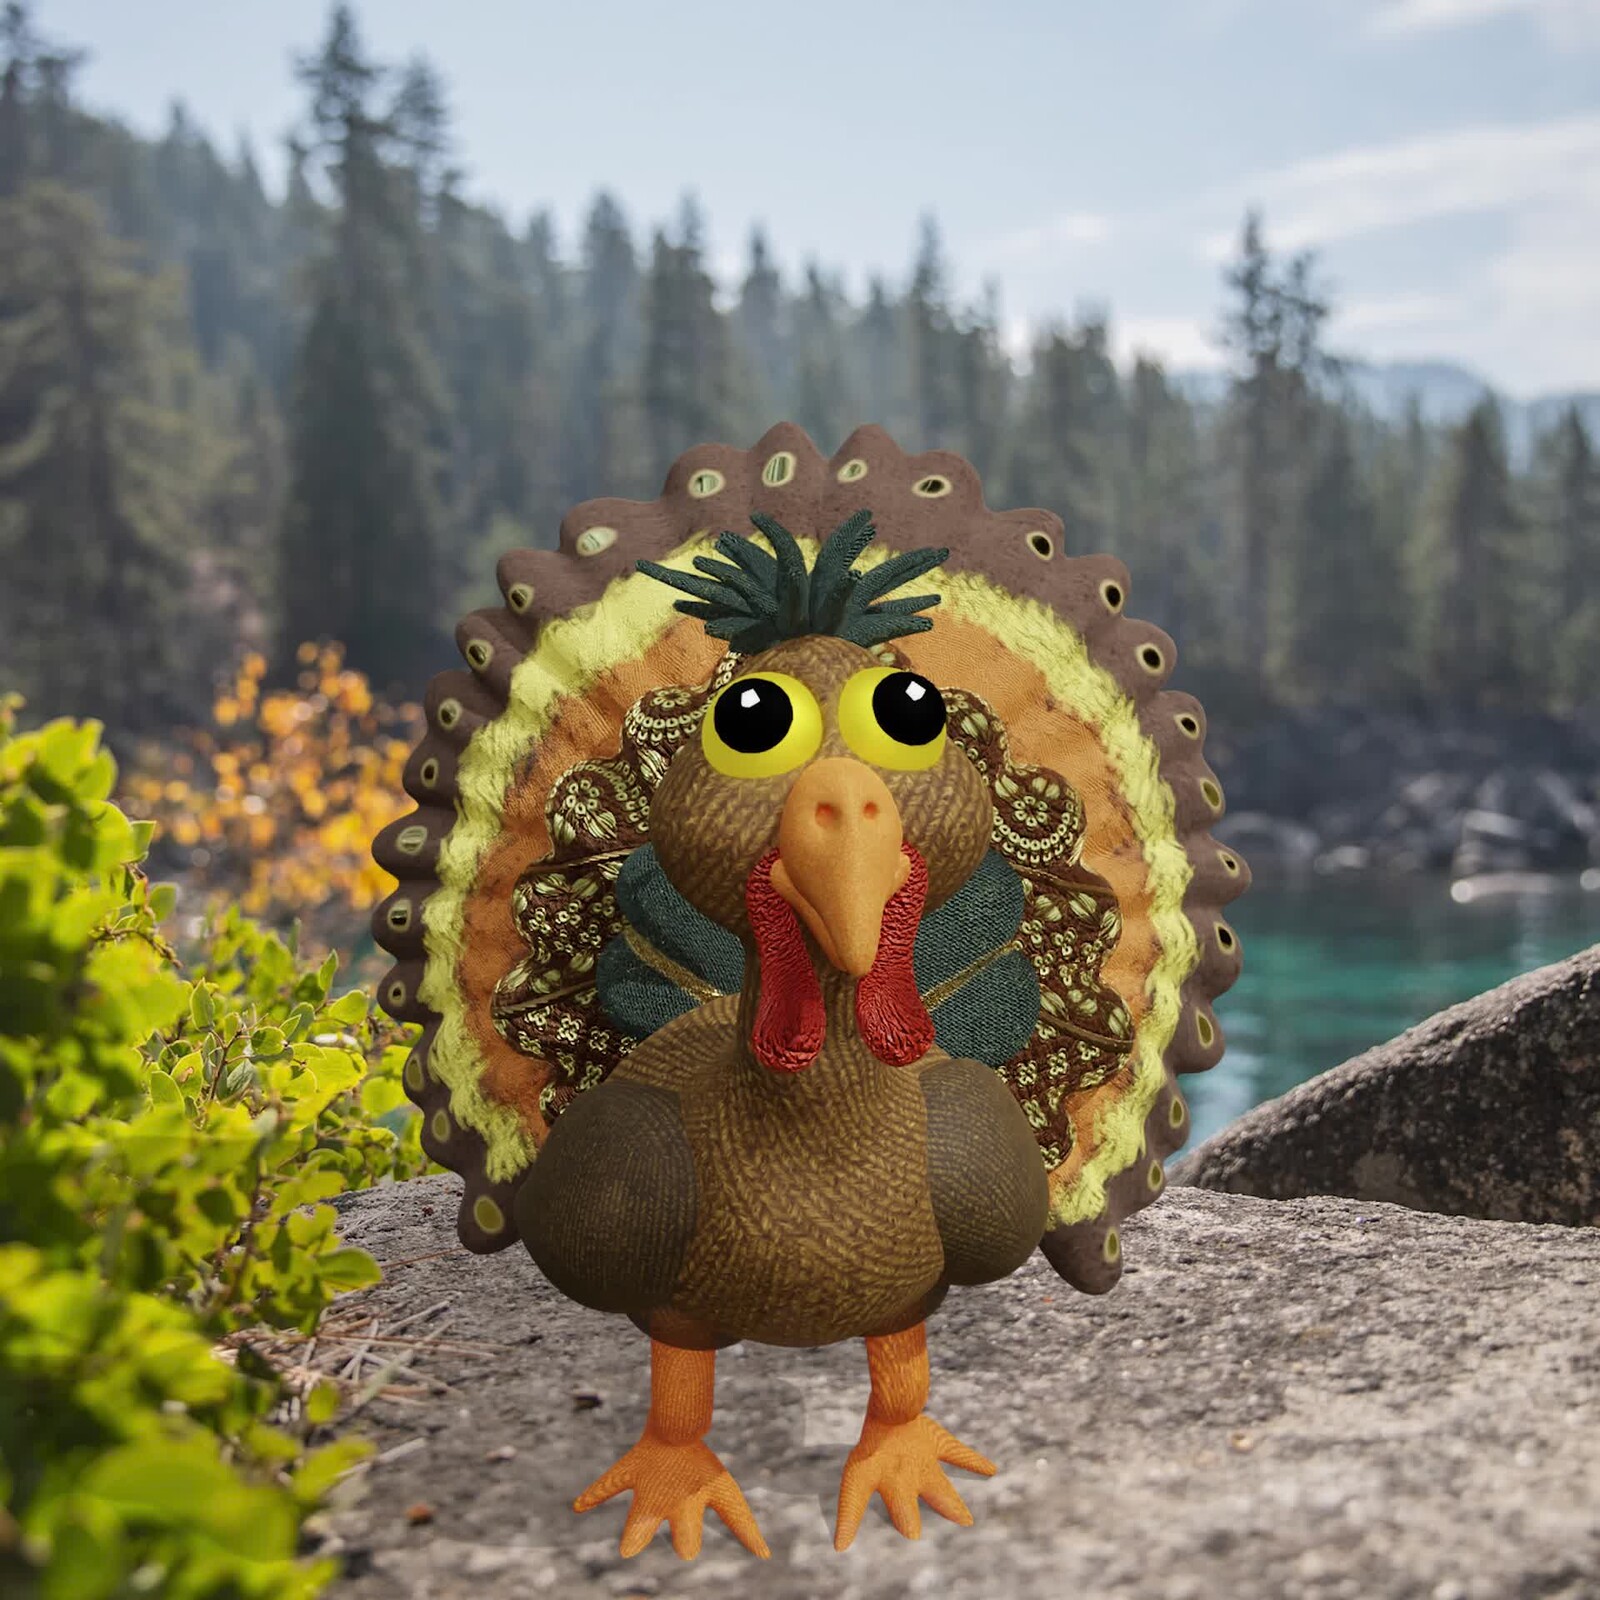 Gobbler the Turkey